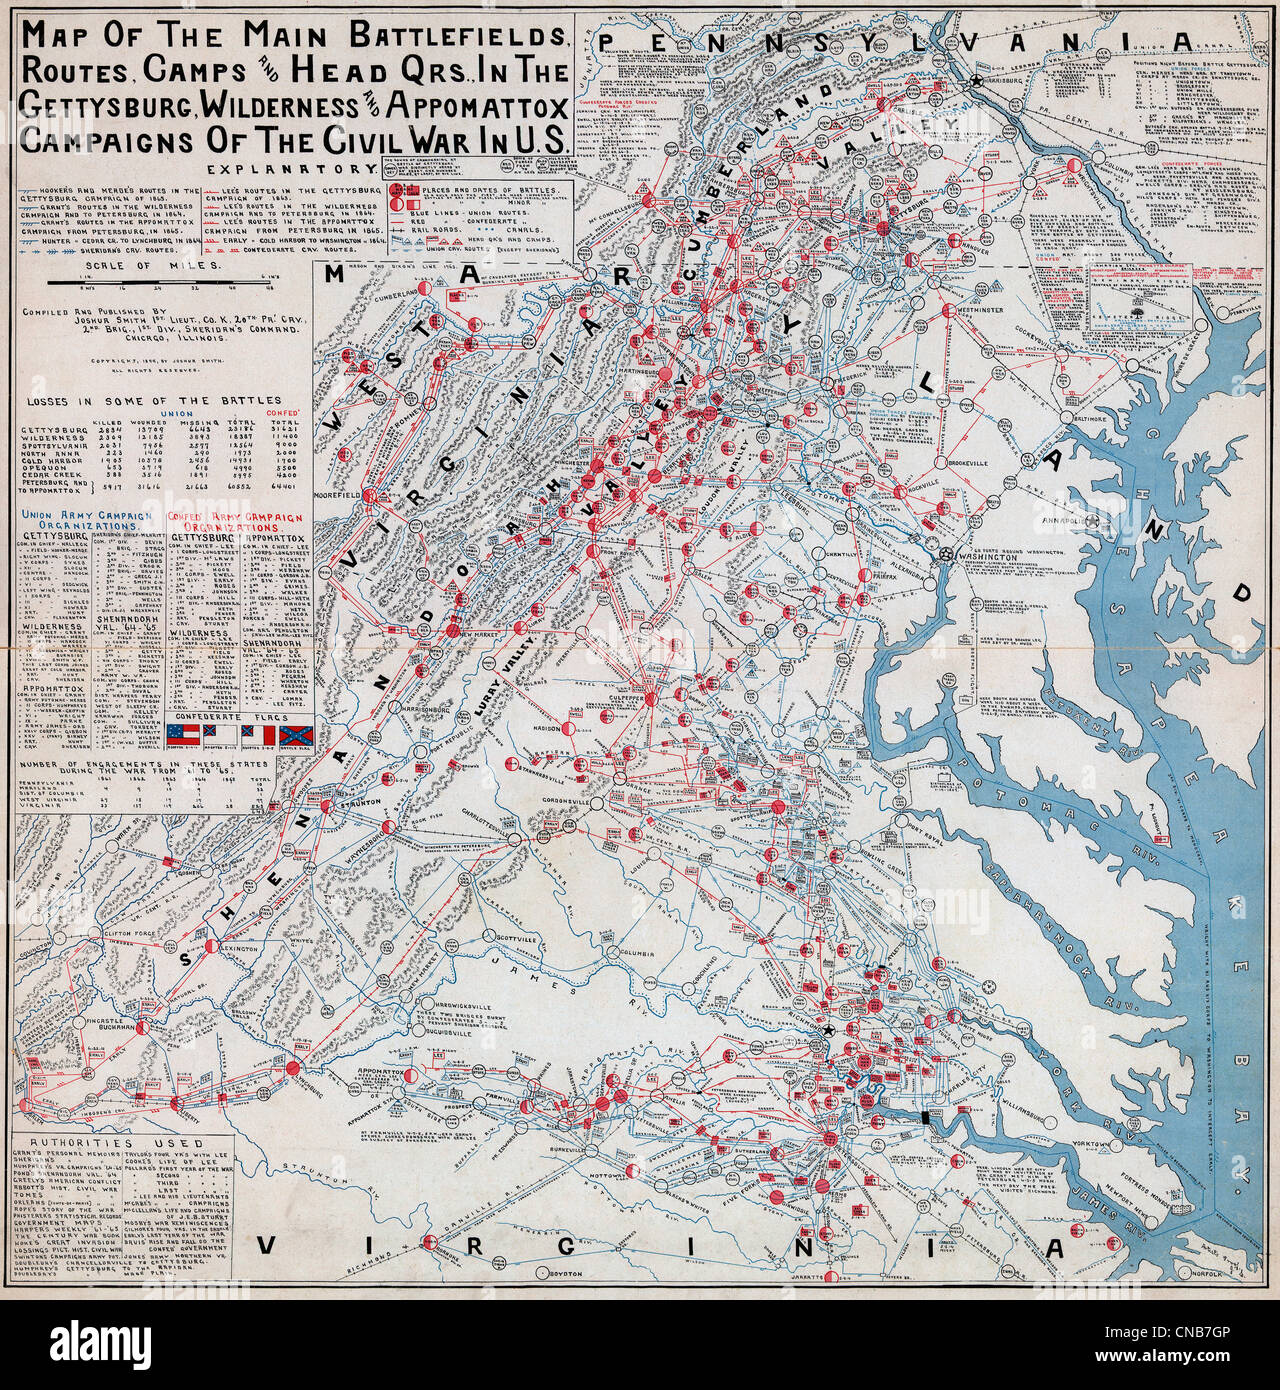 Karte der wichtigsten Schlachtfelder, Routen, Camps und Kopf Qrs., in Gettysburg, Wildnis und Appomattox Kampagnen des Bürgerkrieges in den USA Stockfoto